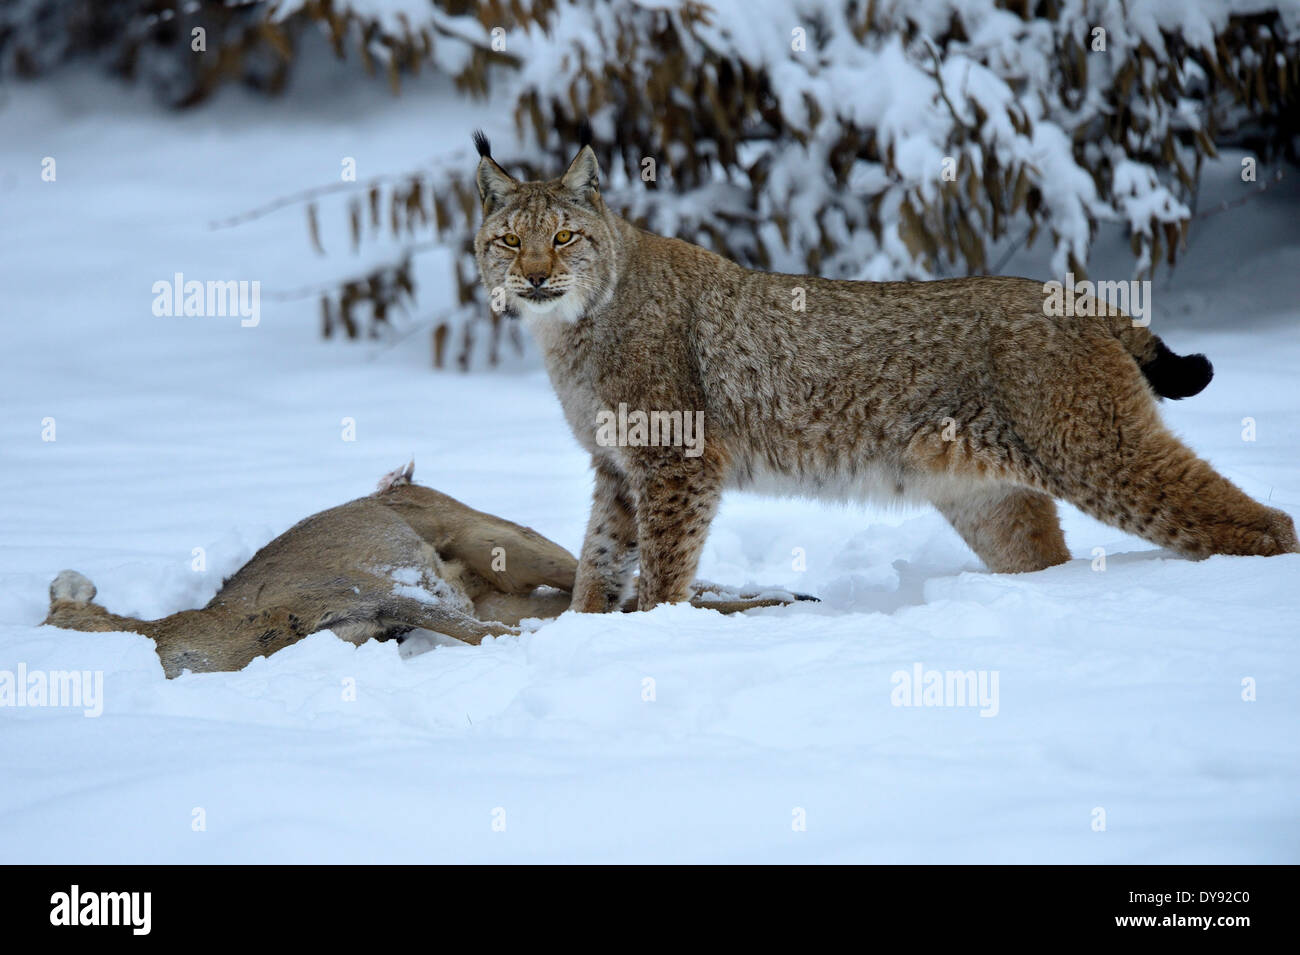 Big cat cat Lynx wildcat chats prédateurs félins animaux à fourrure Lynx lynx lynx lynx boréal lynx animal de proie, d'hiver Banque D'Images